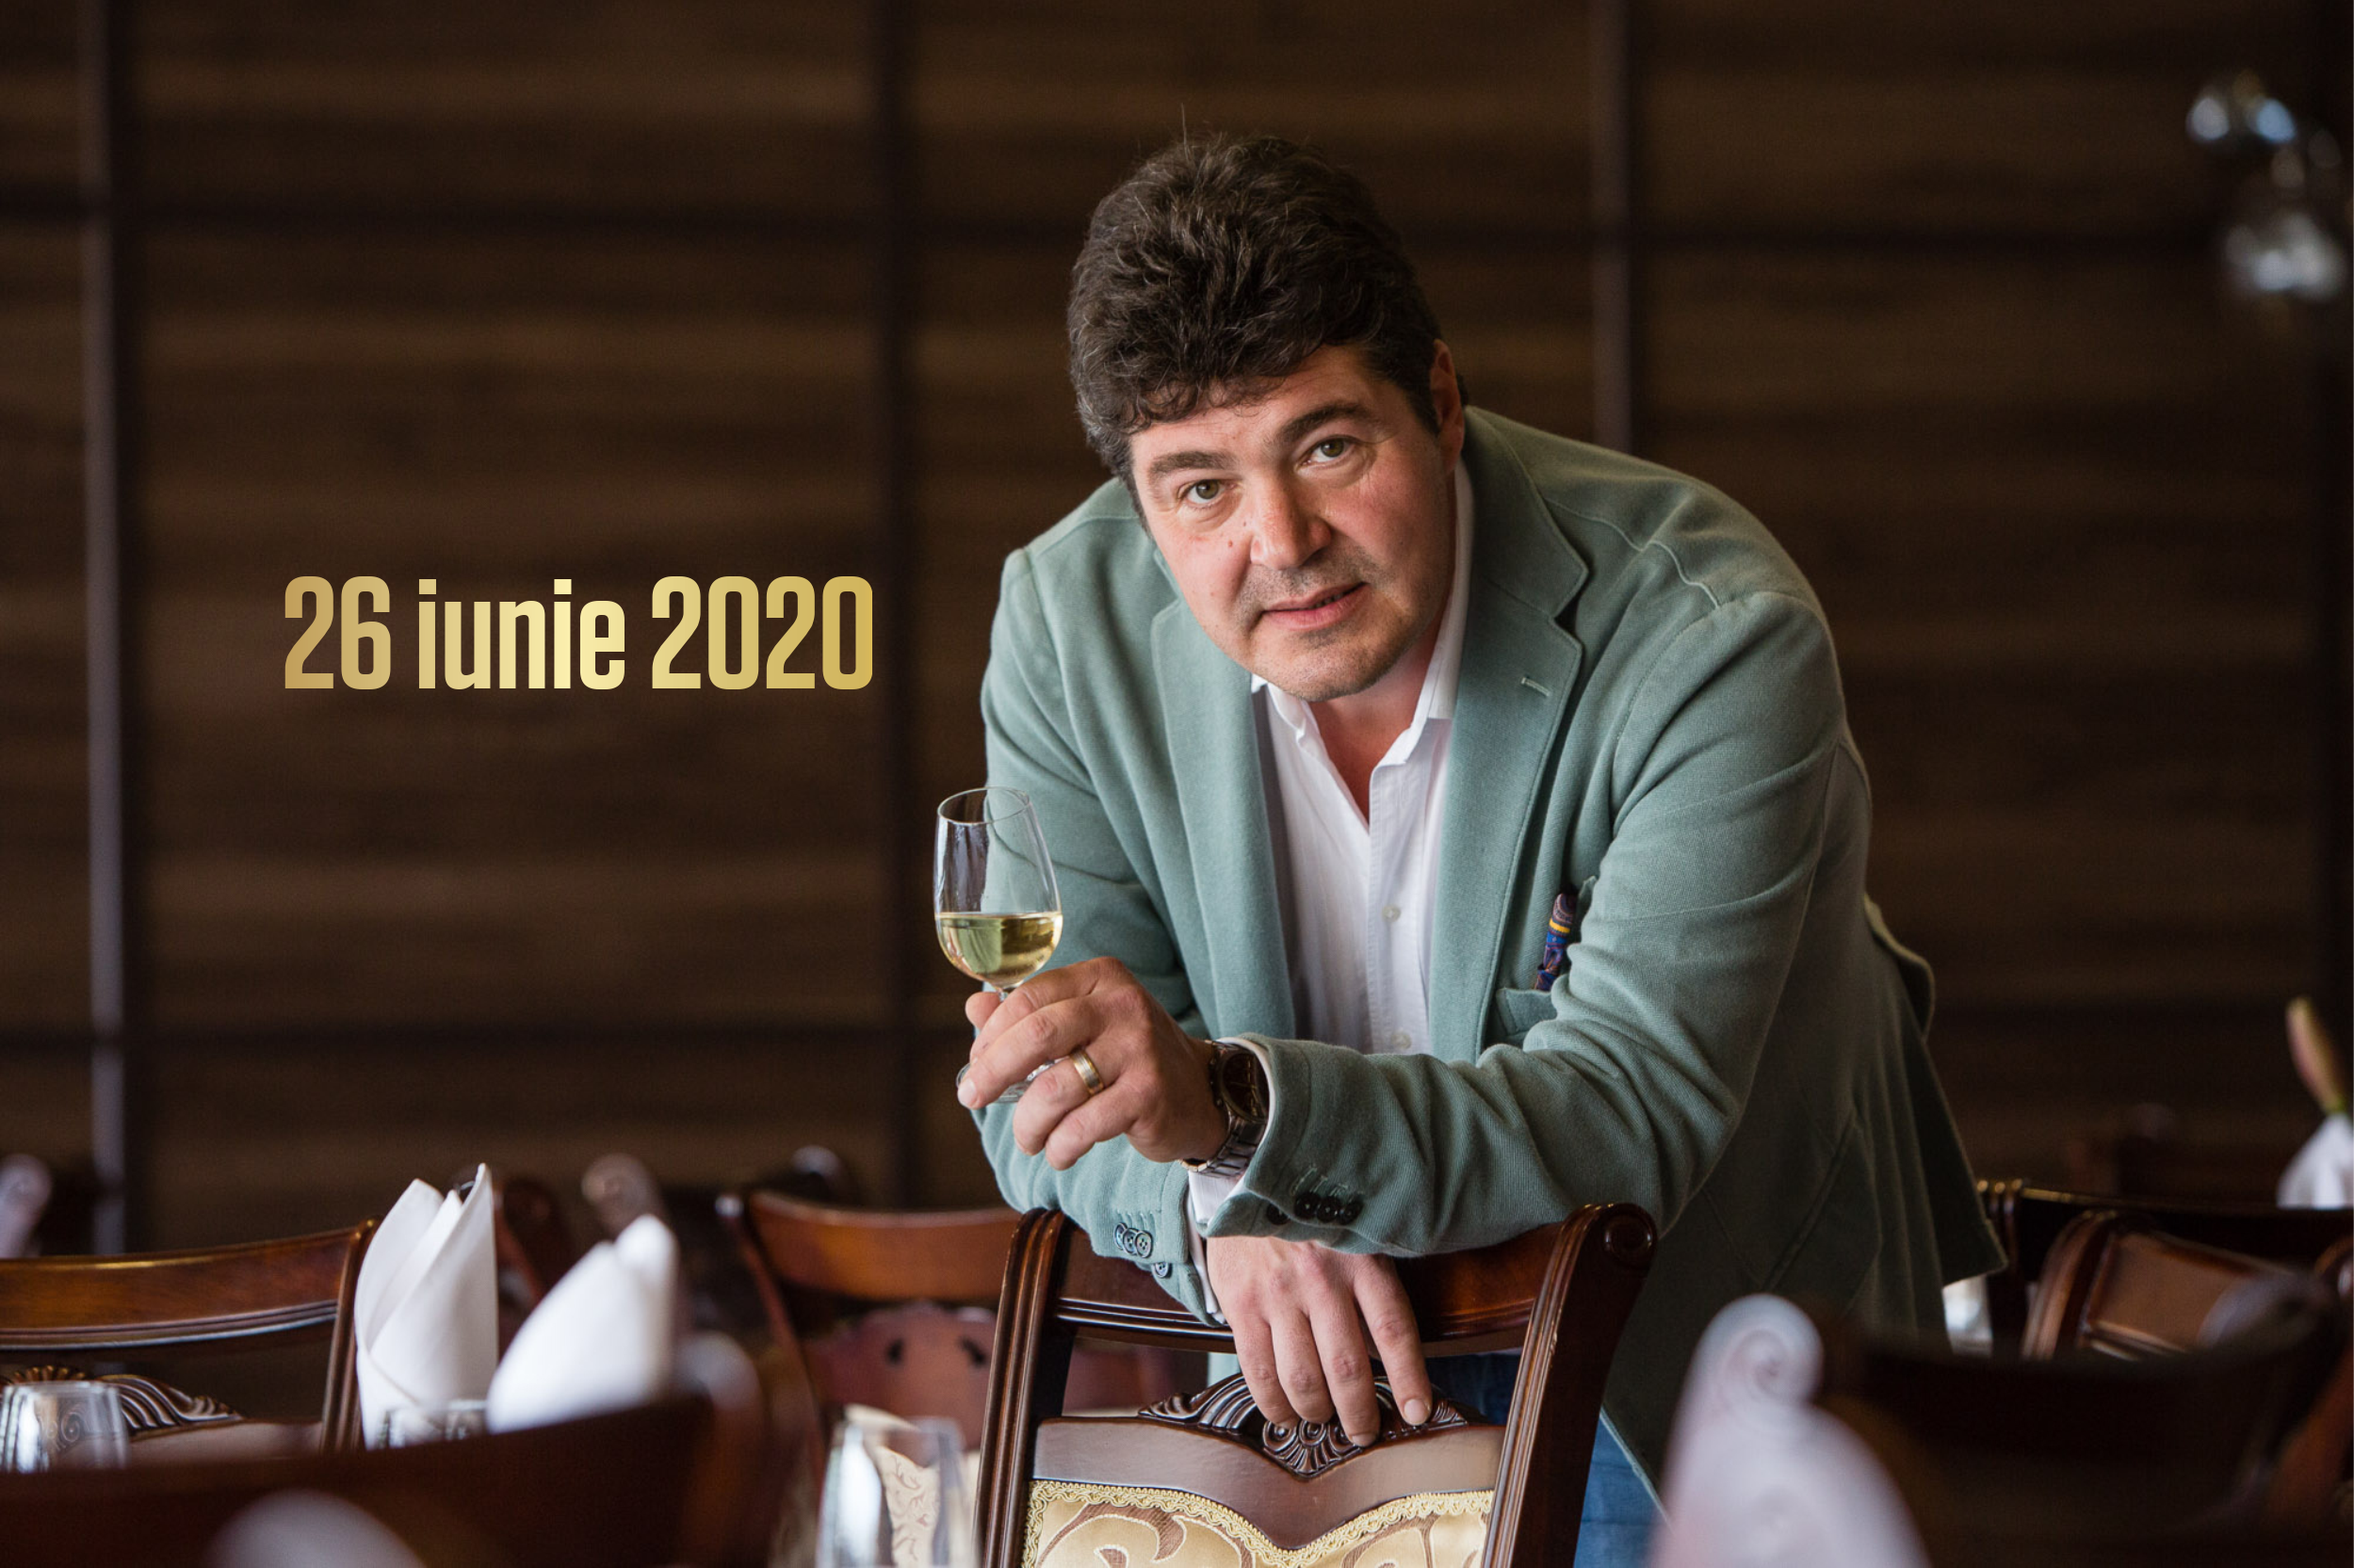 26 iunie 2020 – Ce vinuri bem în acest weekend, 3 vinuri pentru 3 seri. Recomandările lui Cătălin Păduraru, Preşedintele VINARIUM International Wine Contest